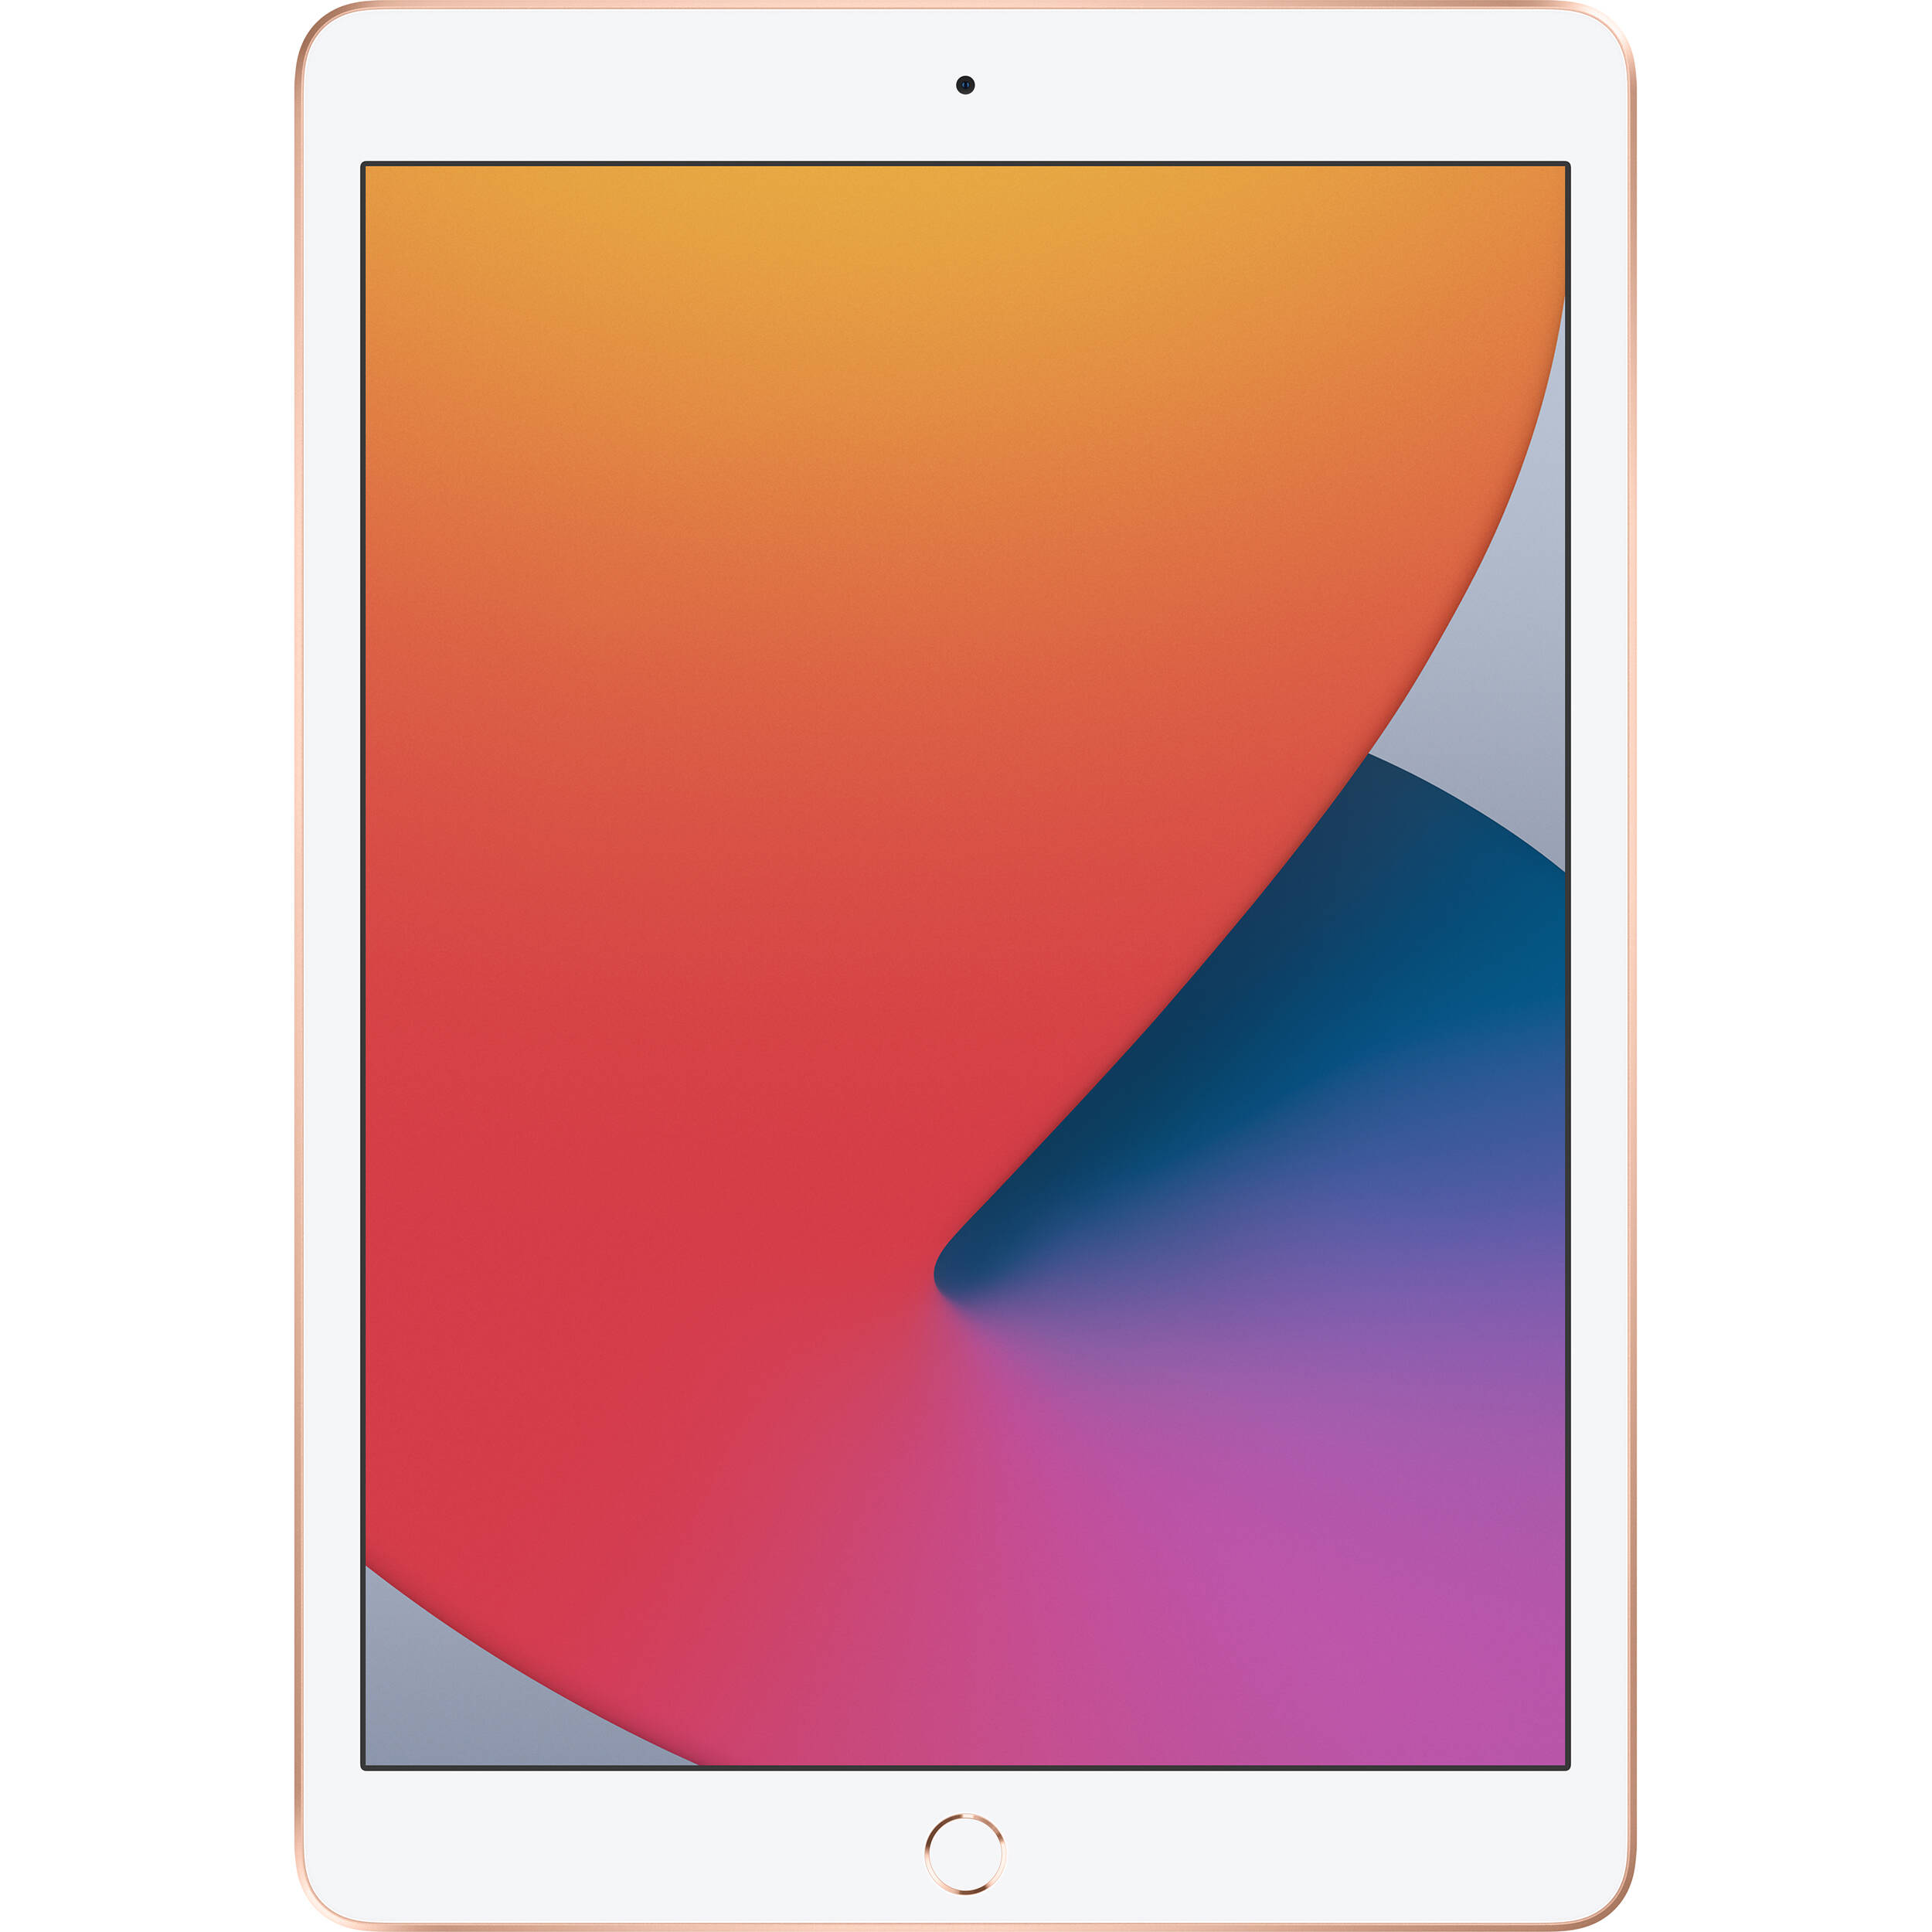 تبلت اپل مدل iPad 10.2 inch 2020 WiFi ظرفیت 128 گیگابایت  main 1 3